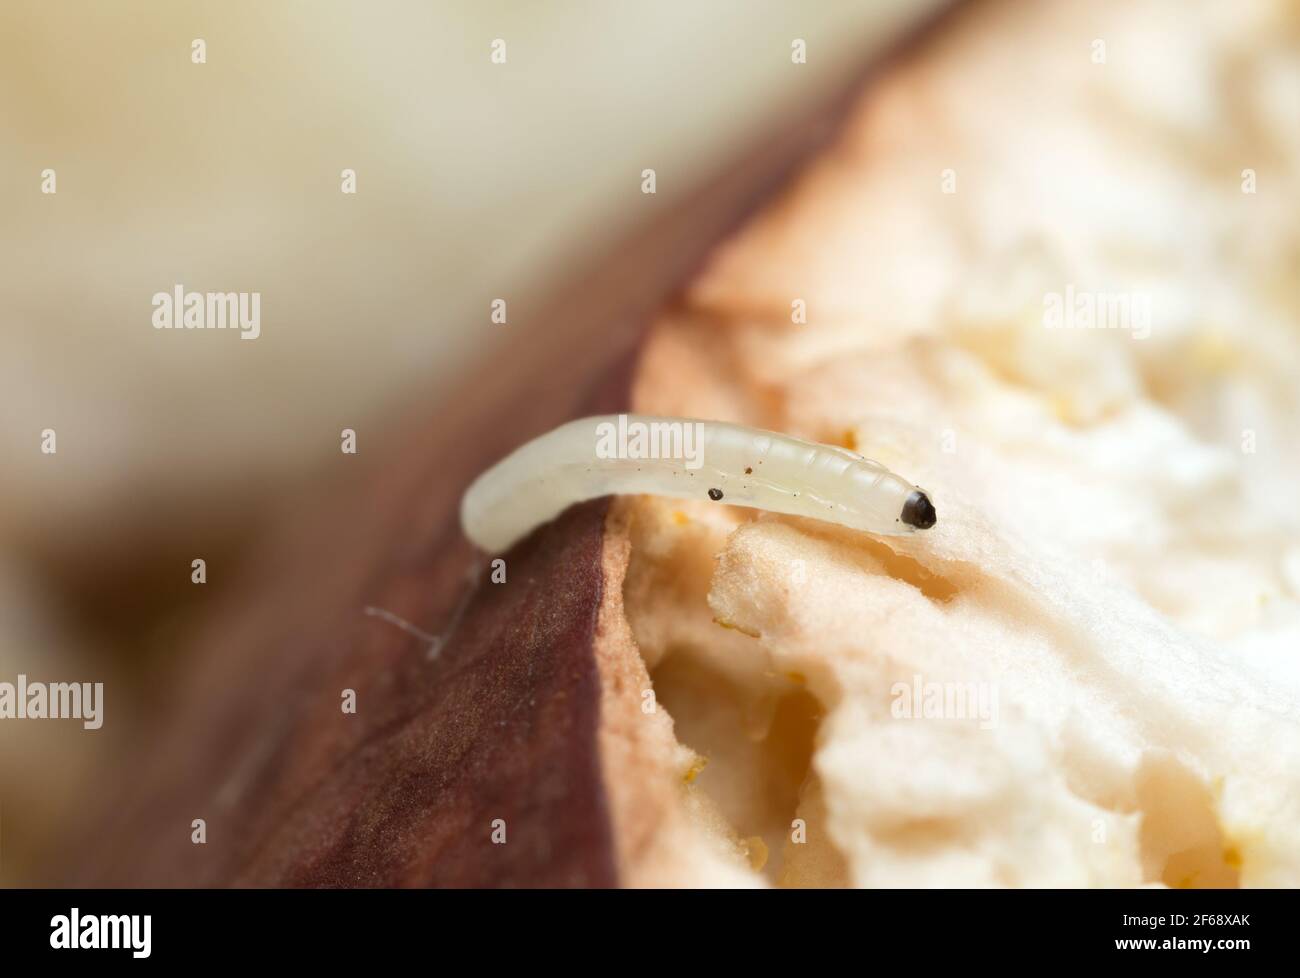 Fungus gnat larva, Mycetophilidae on boletus mushroom Stock Photo